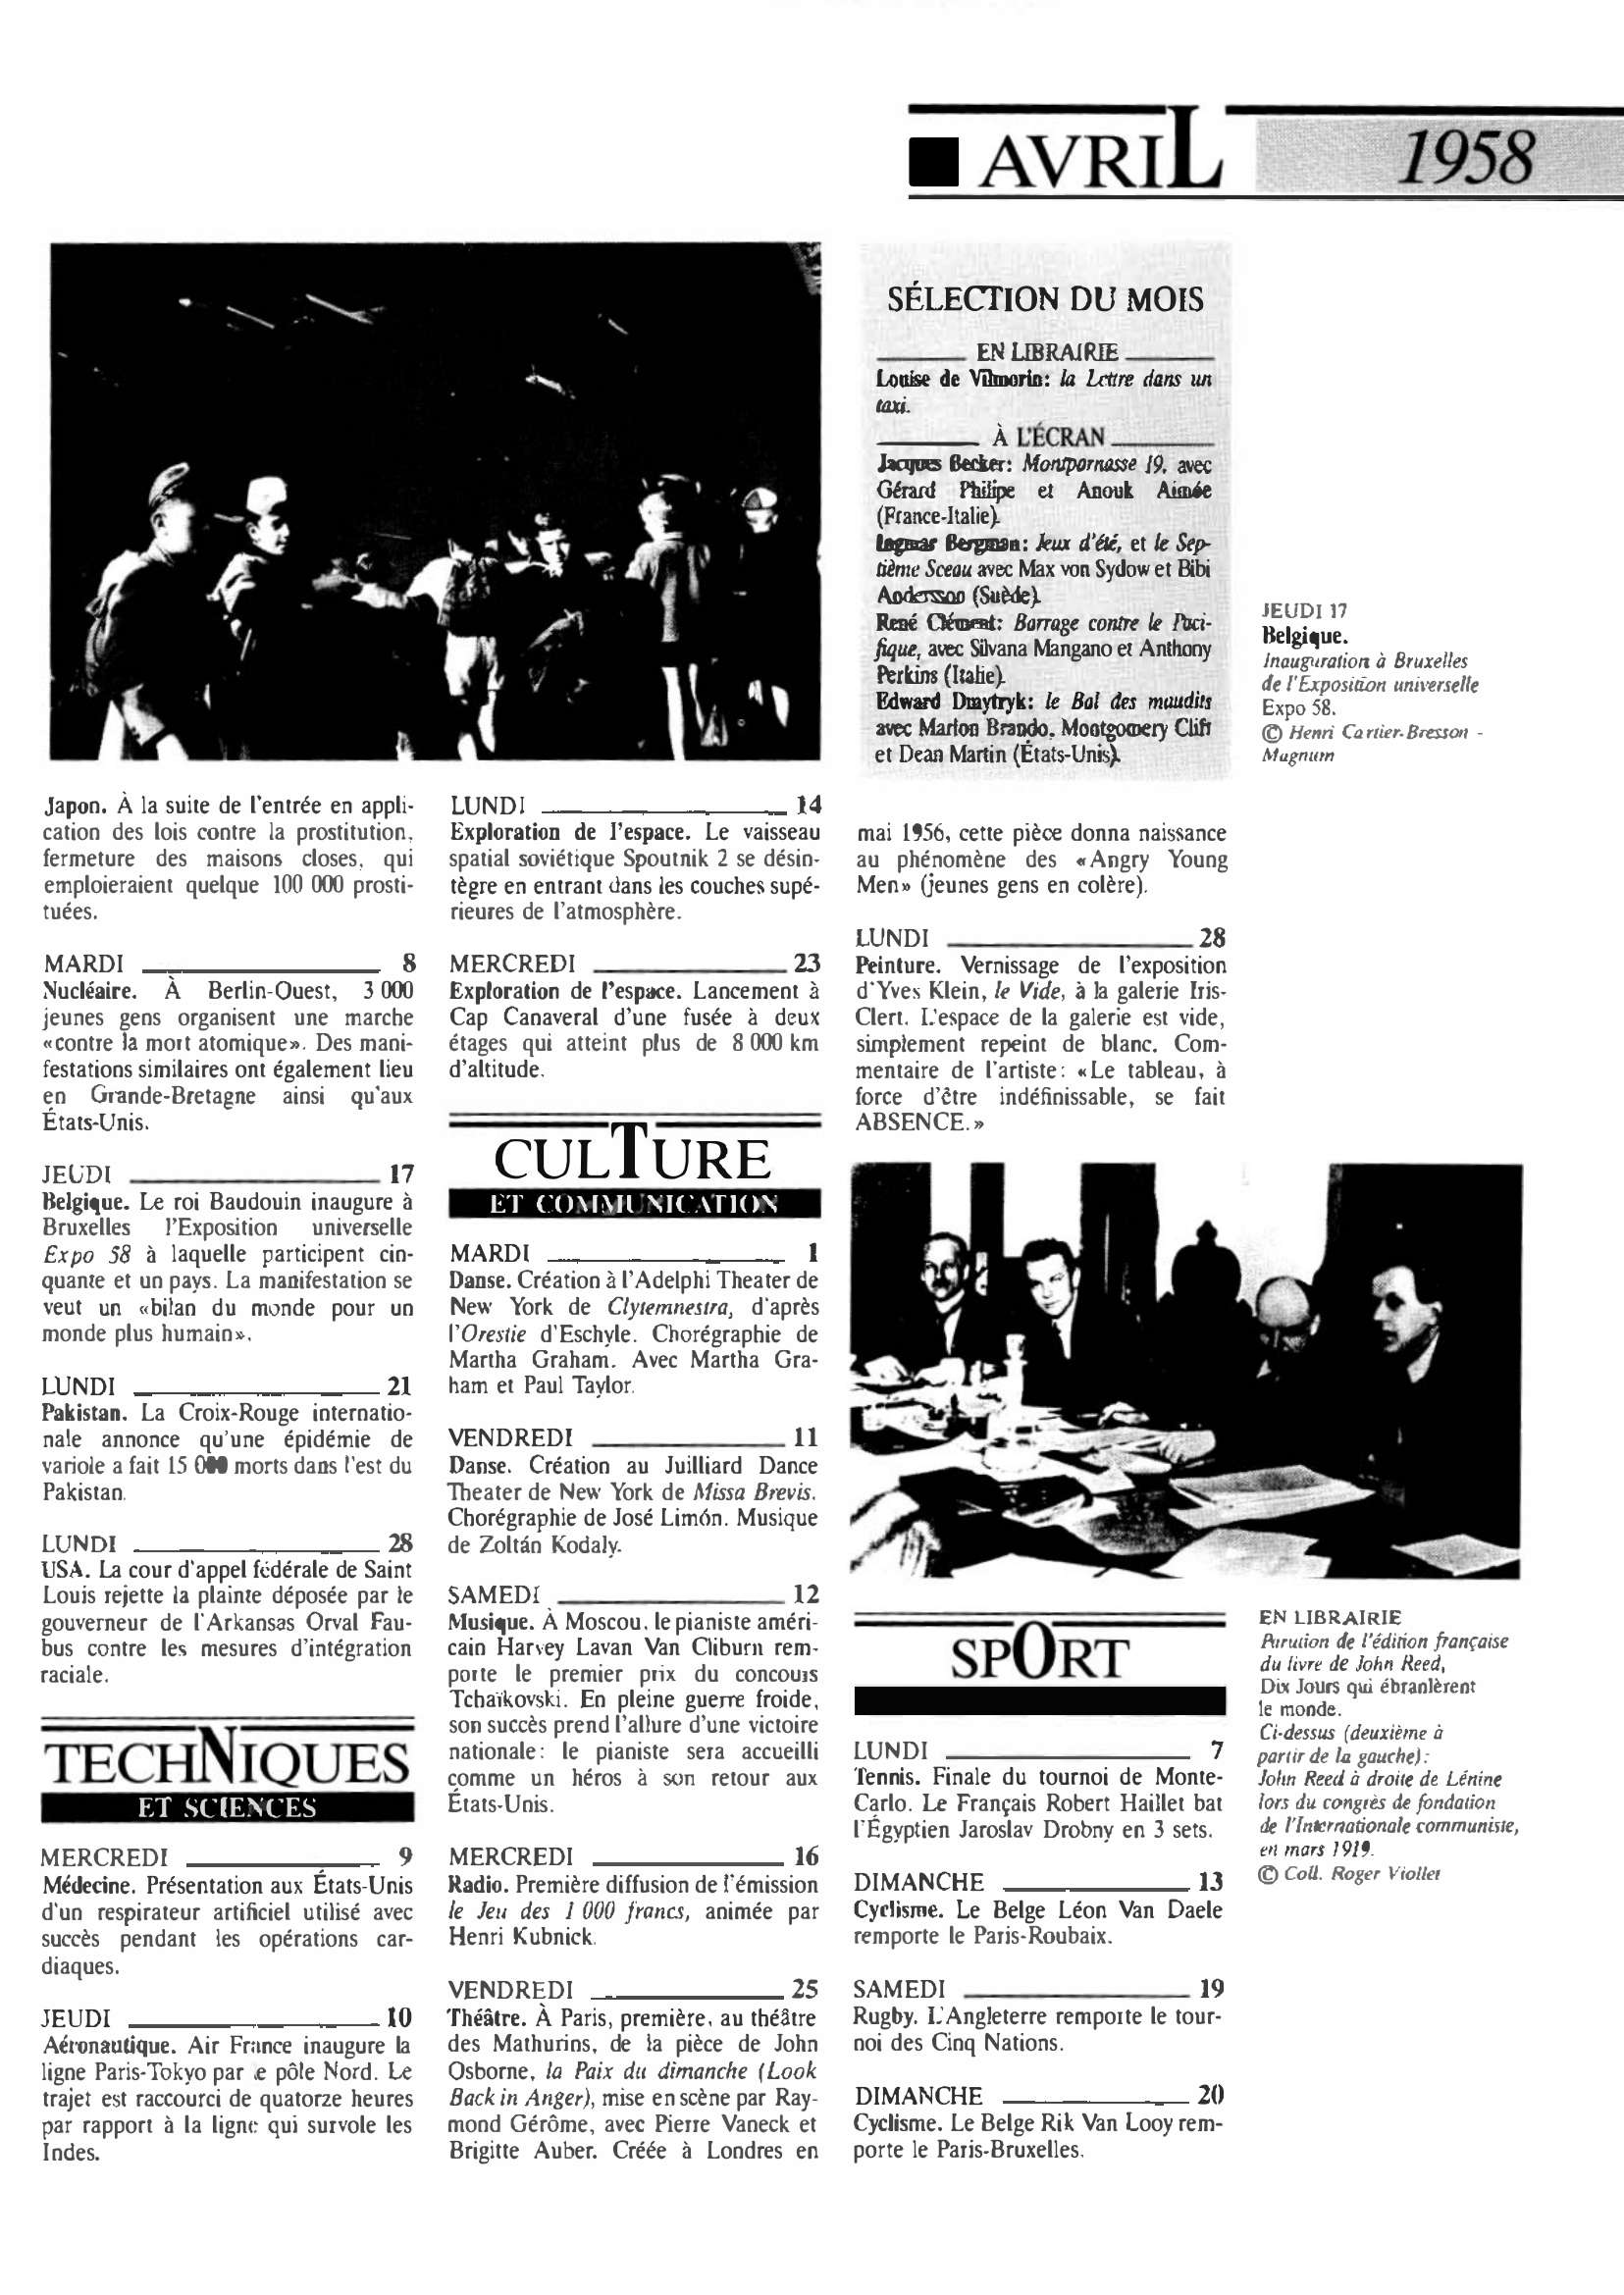 Prévisualisation du document 1958 Avril dans le monde (histoire chronologique)